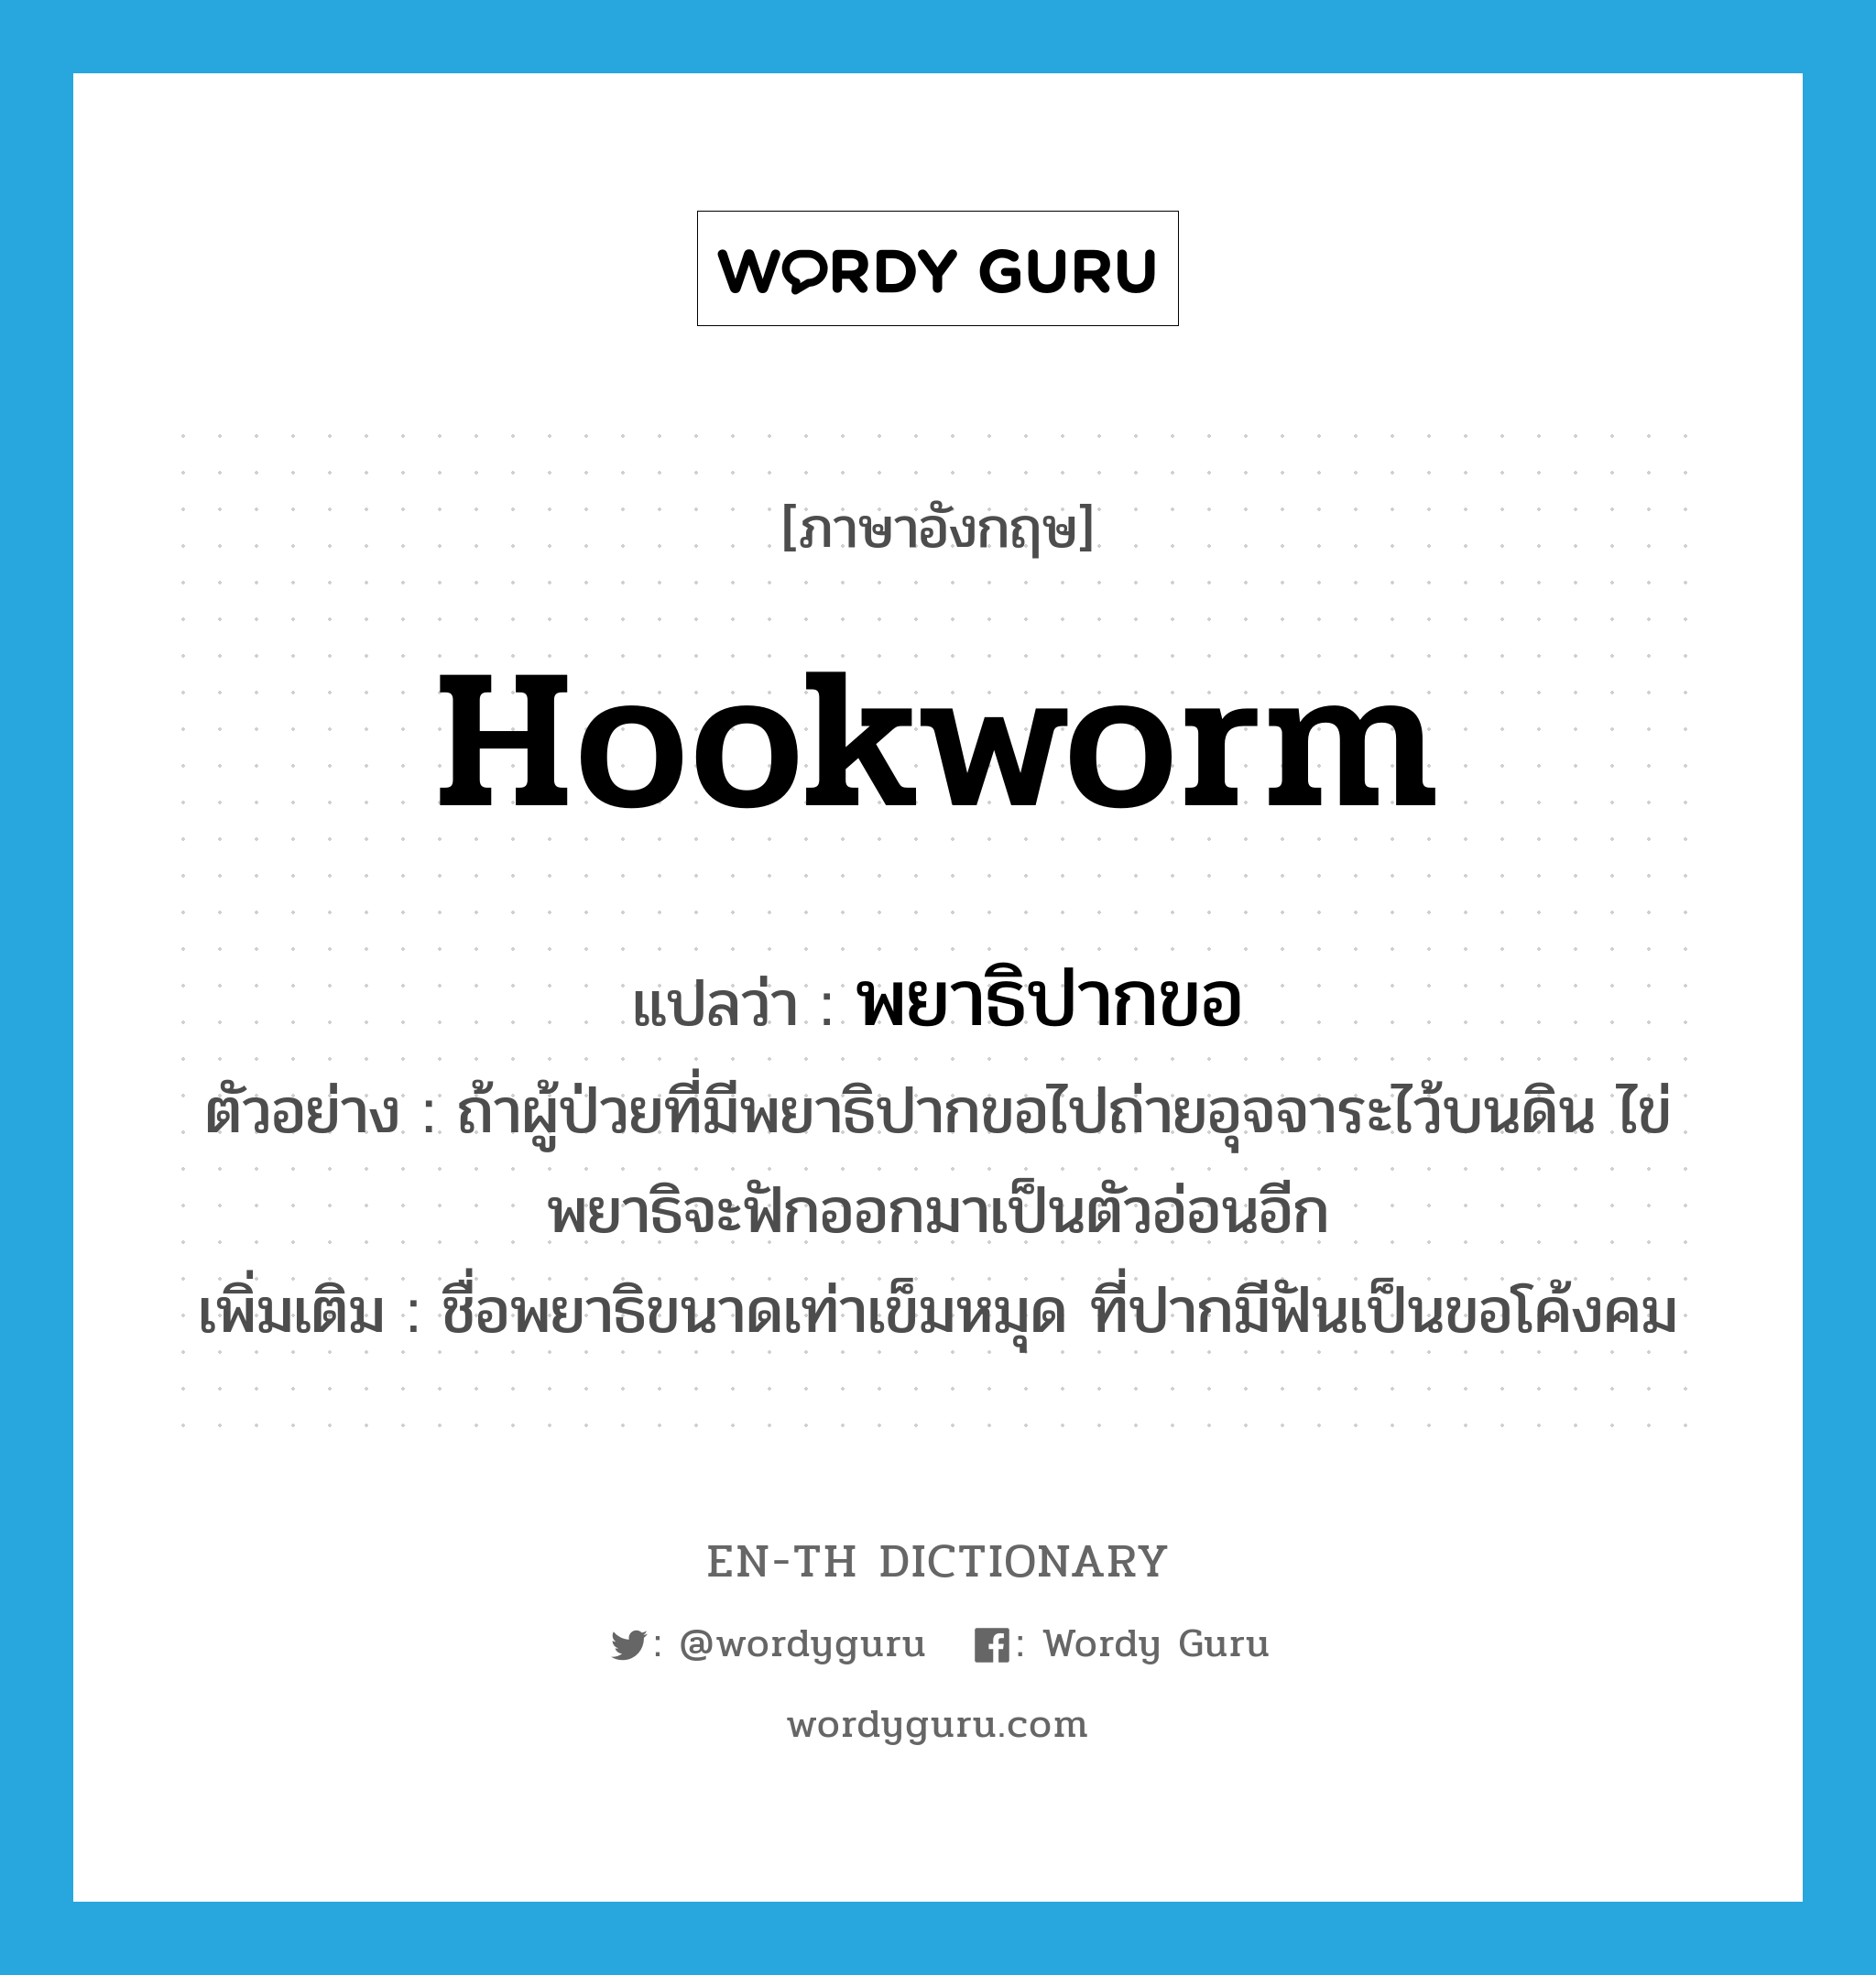 hookworm แปลว่า?, คำศัพท์ภาษาอังกฤษ hookworm แปลว่า พยาธิปากขอ ประเภท N ตัวอย่าง ถ้าผู้ป่วยที่มีพยาธิปากขอไปถ่ายอุจจาระไว้บนดิน ไข่พยาธิจะฟักออกมาเป็นตัวอ่อนอีก เพิ่มเติม ชื่อพยาธิขนาดเท่าเข็มหมุด ที่ปากมีฟันเป็นขอโค้งคม หมวด N